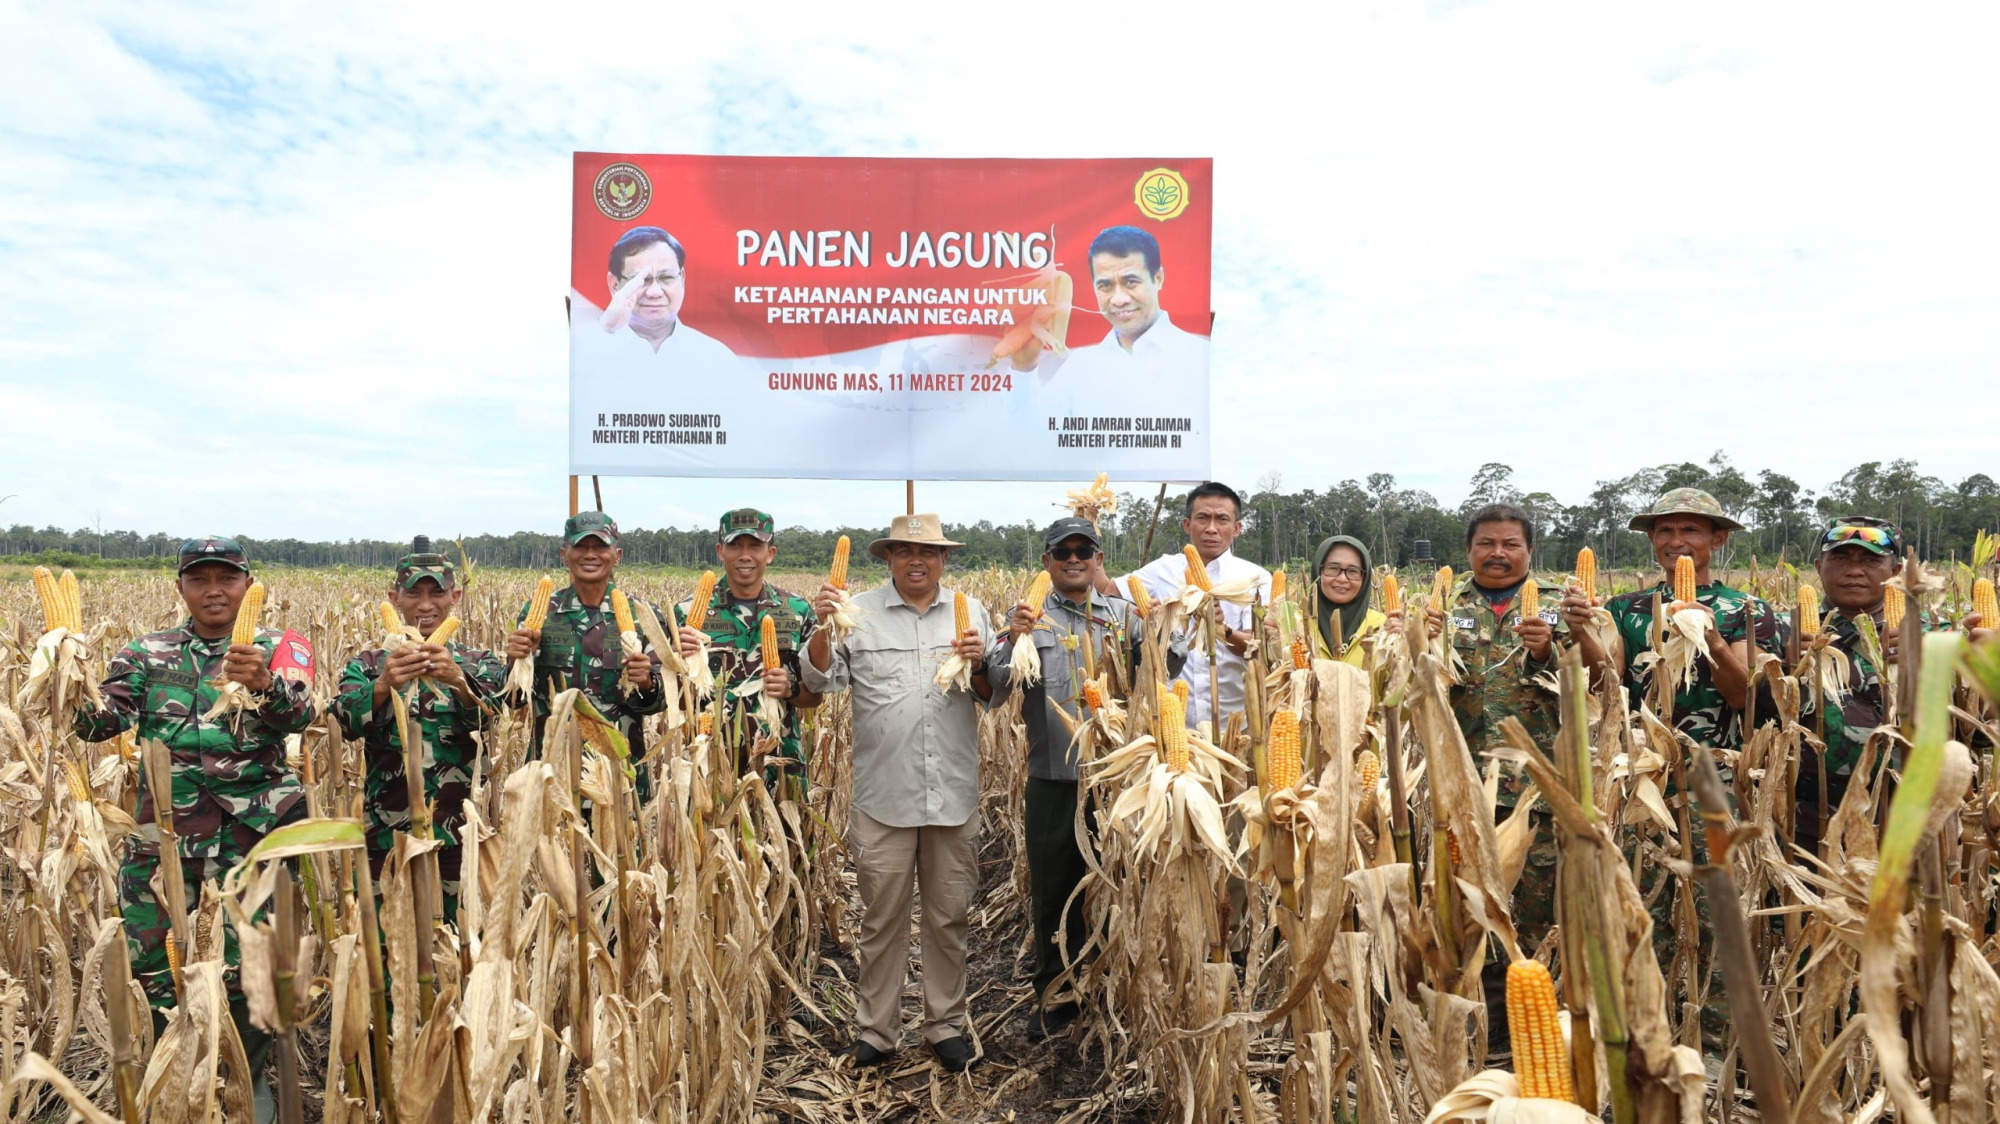 Kementerian Pertahanan RI Panen Raya Jagung di Lahan Food Estate, Kalimantan Tengah